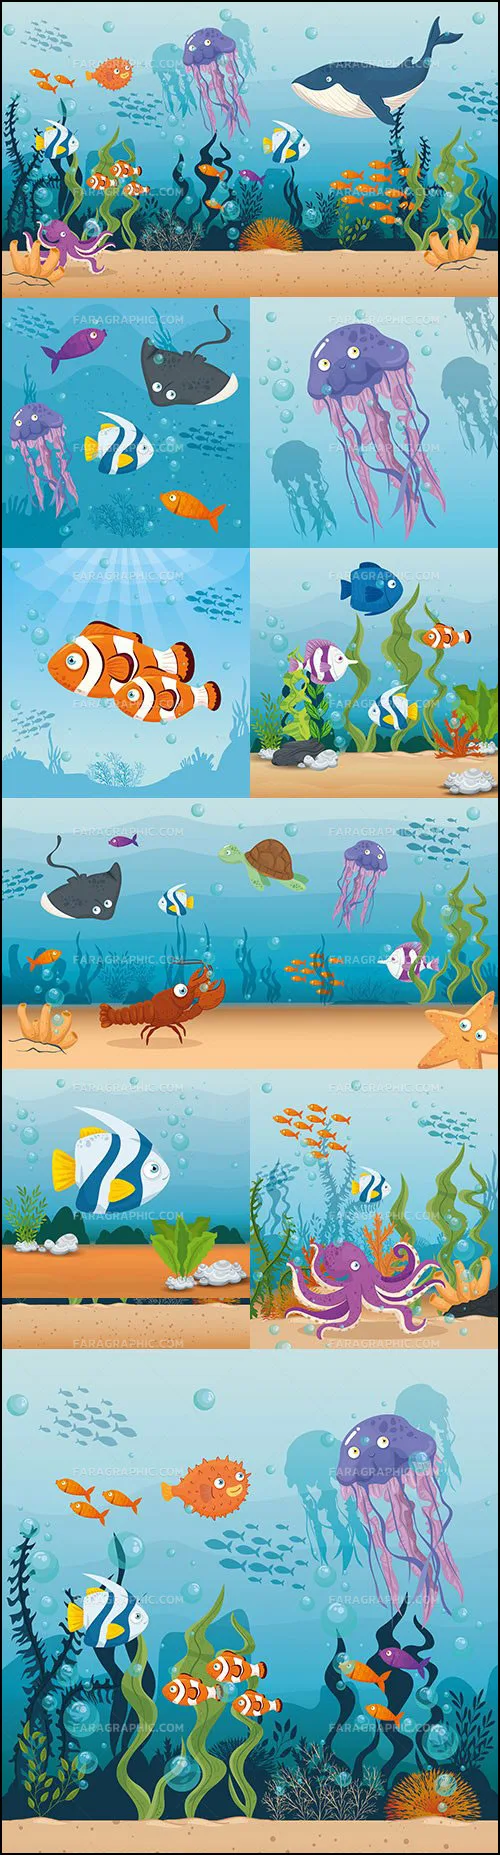 دانلود وکتور های کارتونی اقیانوس و ماهی